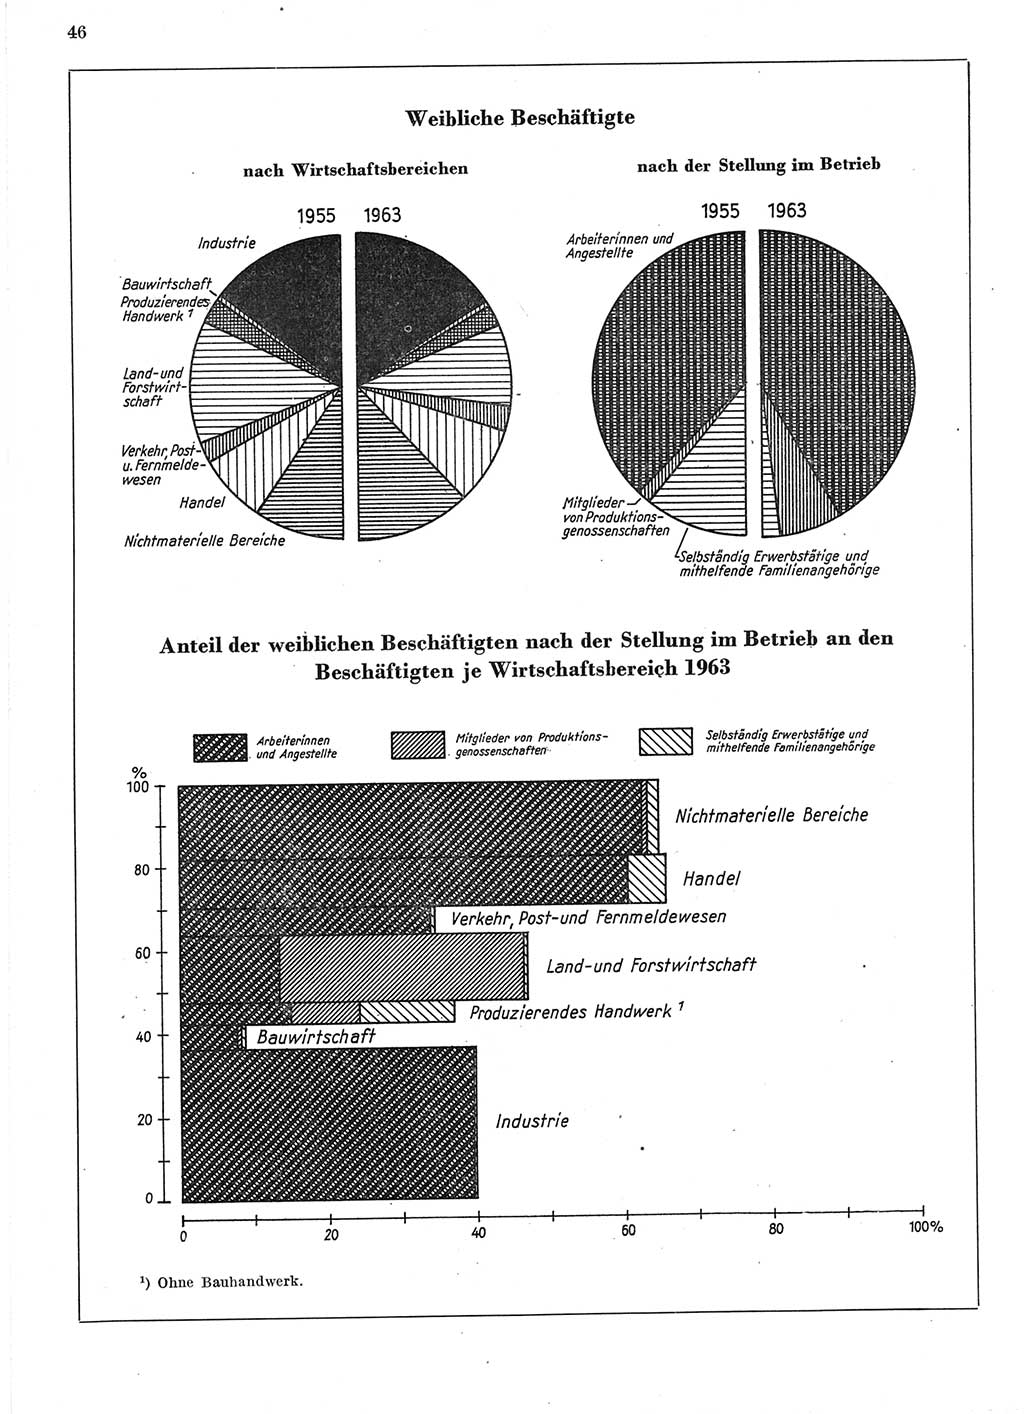 Statistisches Jahrbuch der Deutschen Demokratischen Republik (DDR) 1964, Seite 46 (Stat. Jb. DDR 1964, S. 46)